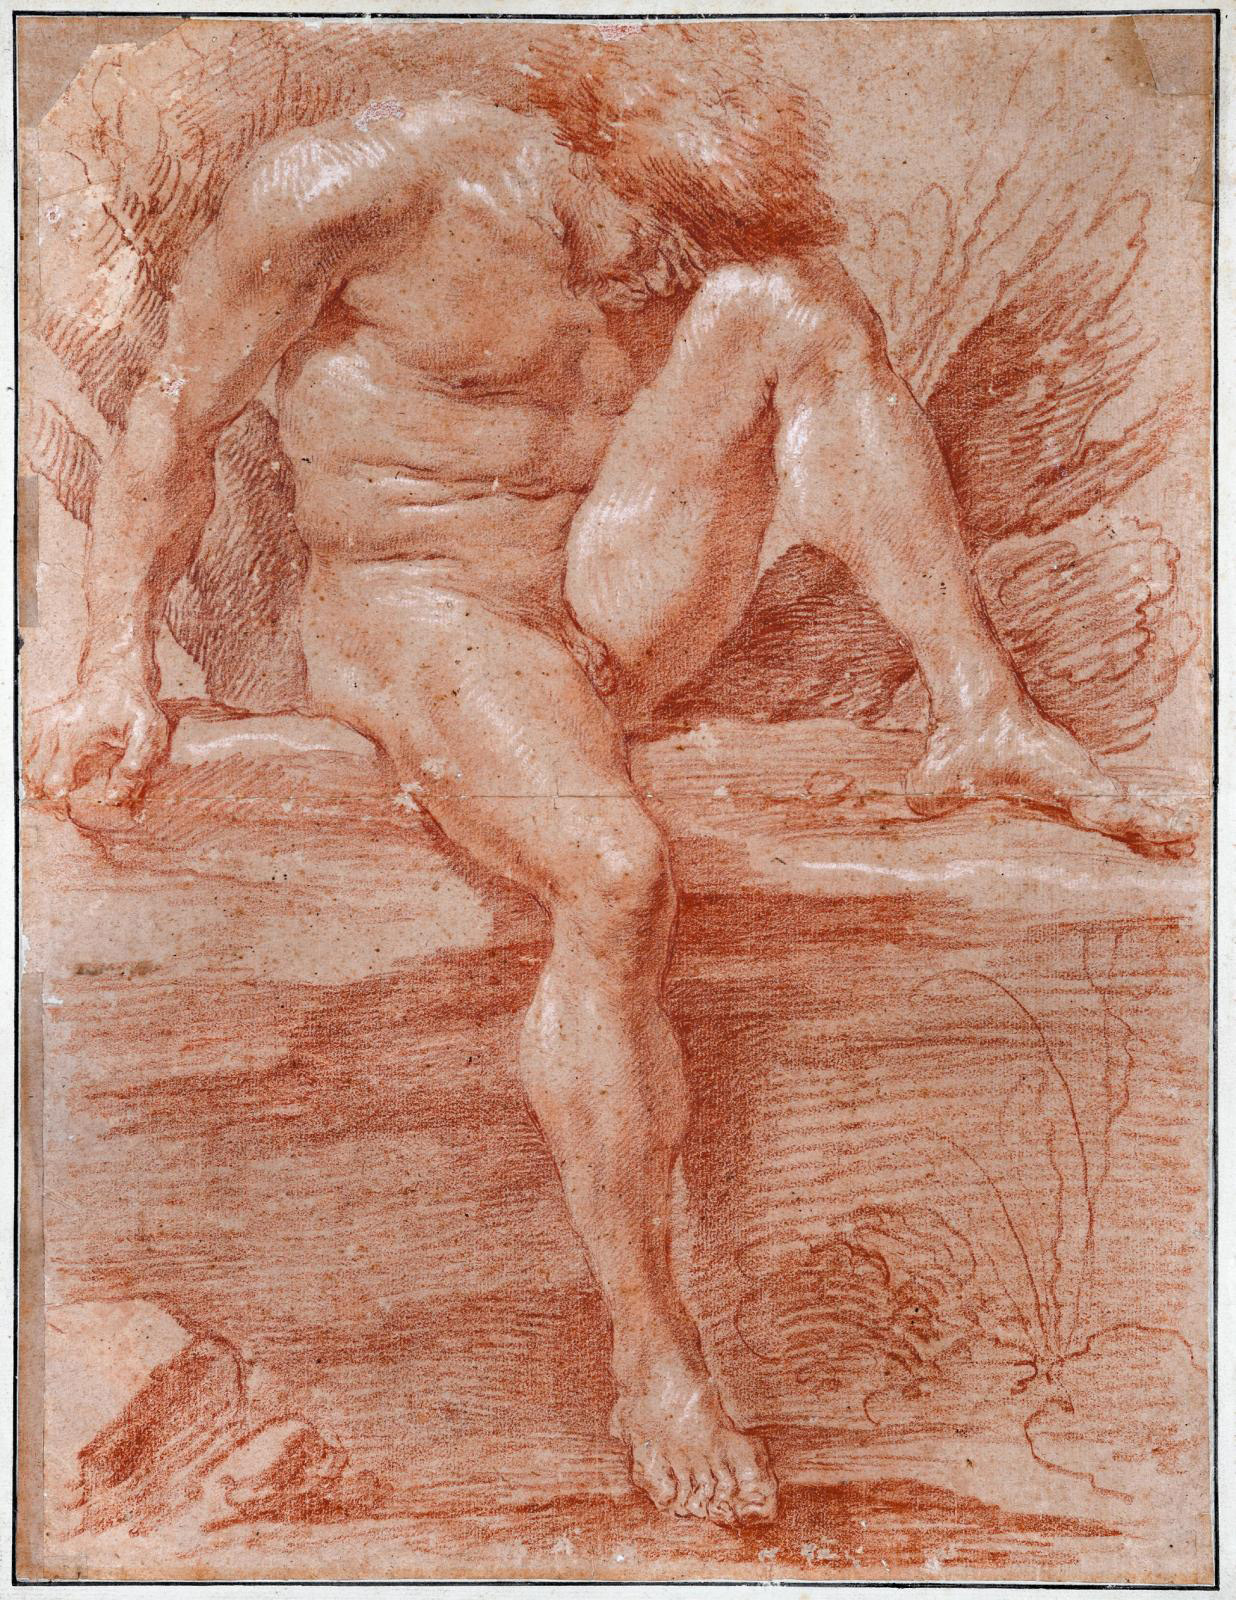 A Record for a Bernini Male Nude